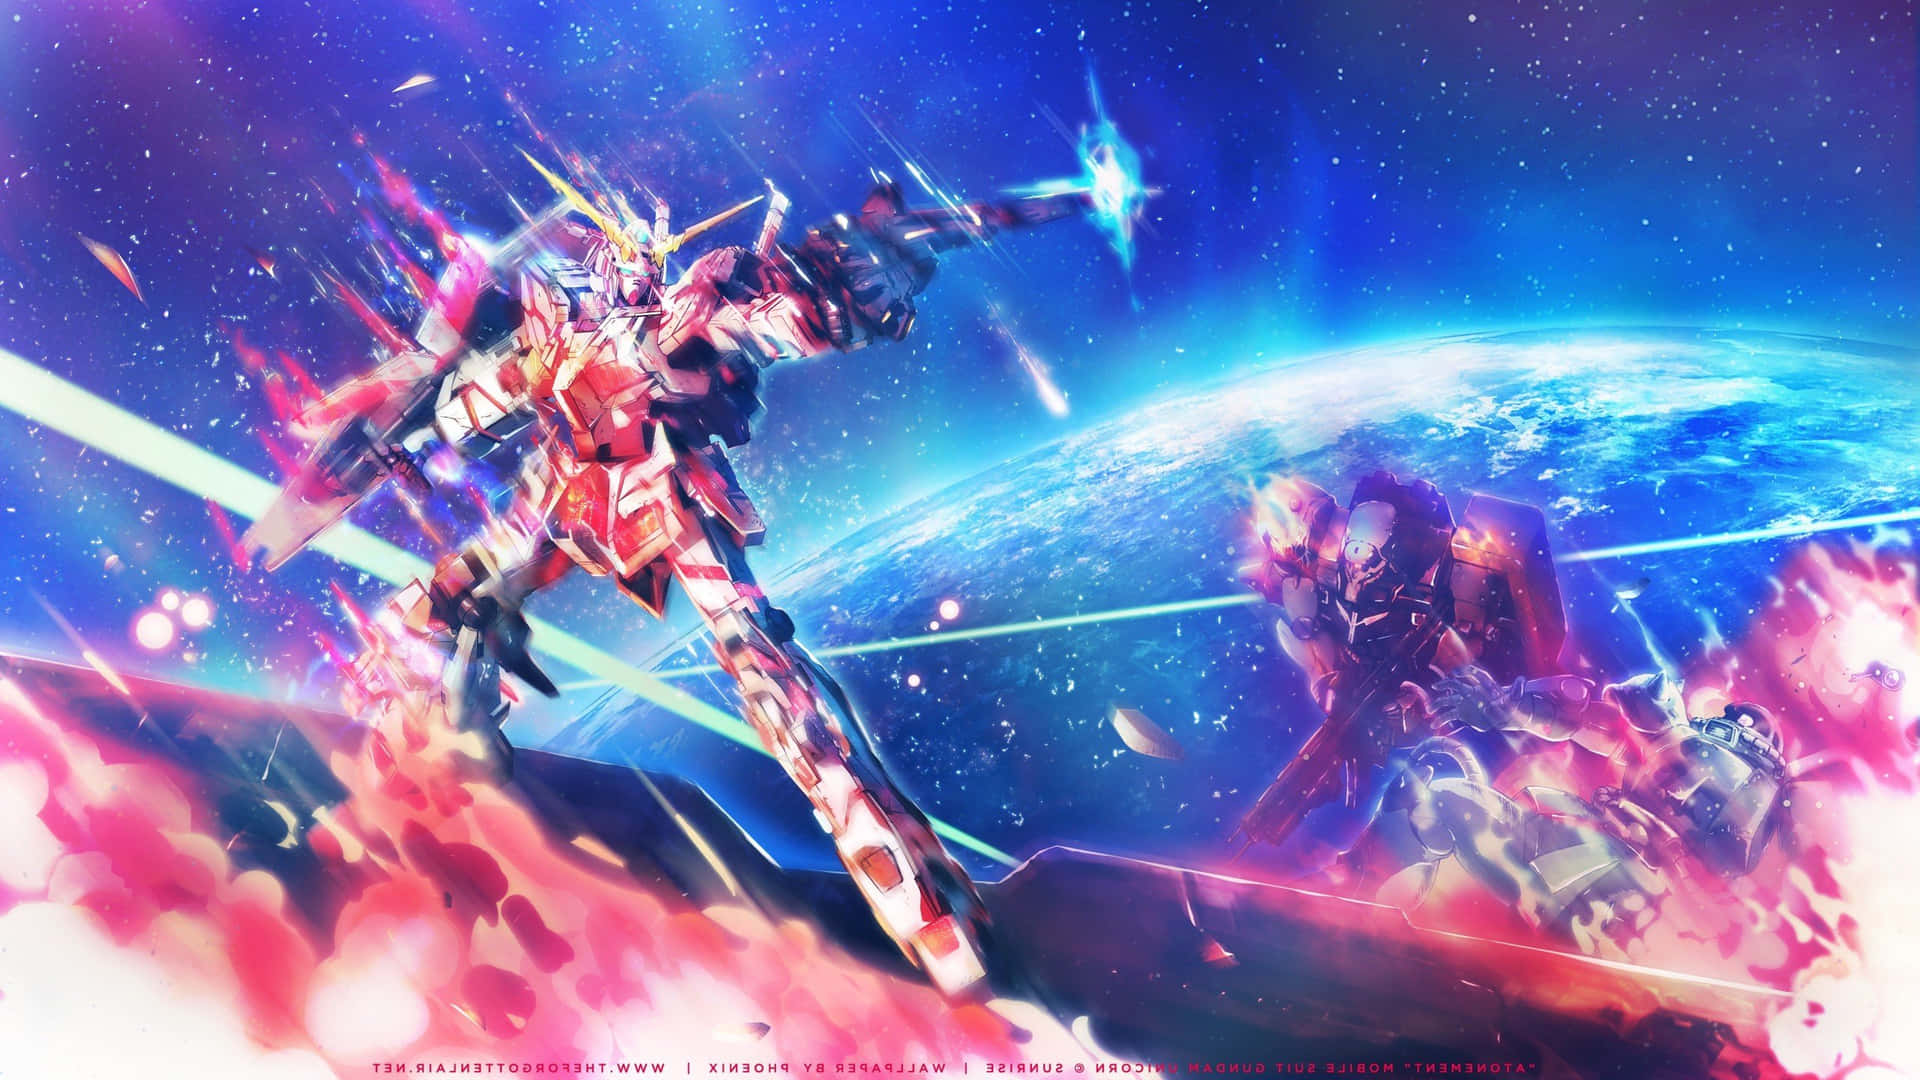 Bleibensie Mit Ihrem Lieblings-anime Auf Dem Laufenden, Indem Sie Sich Ein Gundam-desktophintergrundbild Herunterladen. Wallpaper